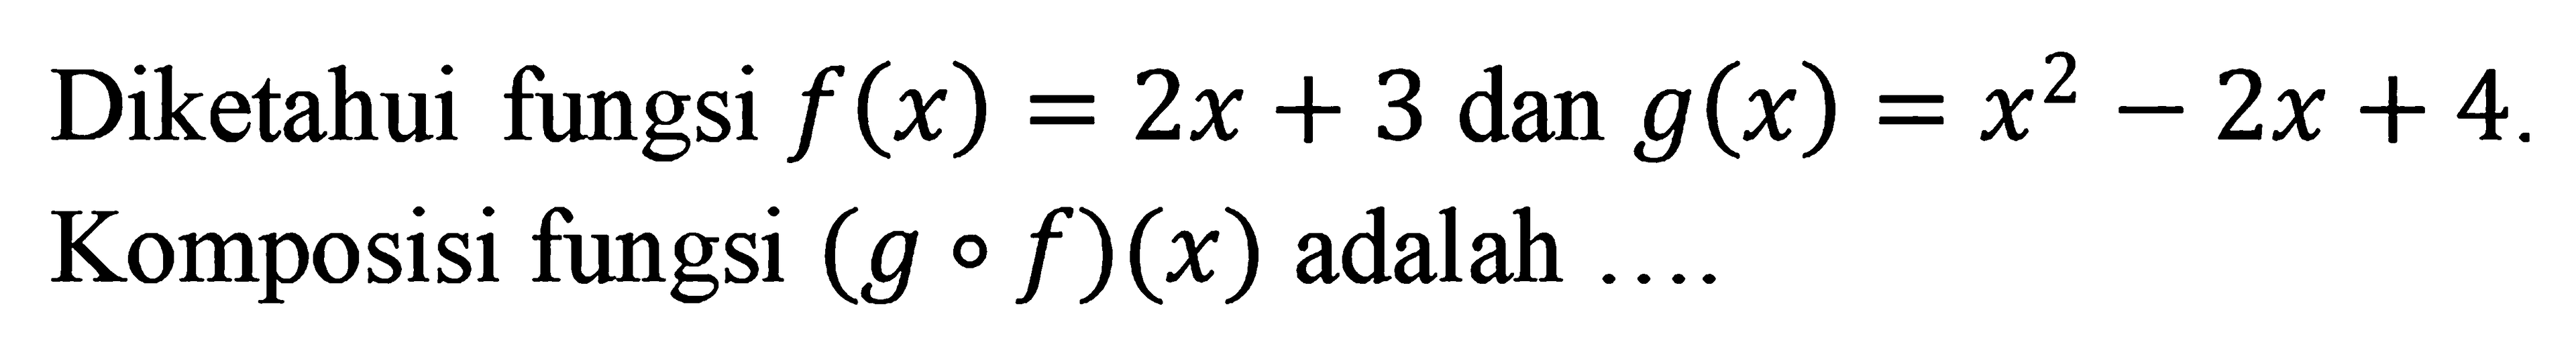 Diketahui fungsi f(x) = 2x + 3 dan g(x) = x^2 - 2x + 4. Komposisi fungsi (g ∘ f)(x) adalah